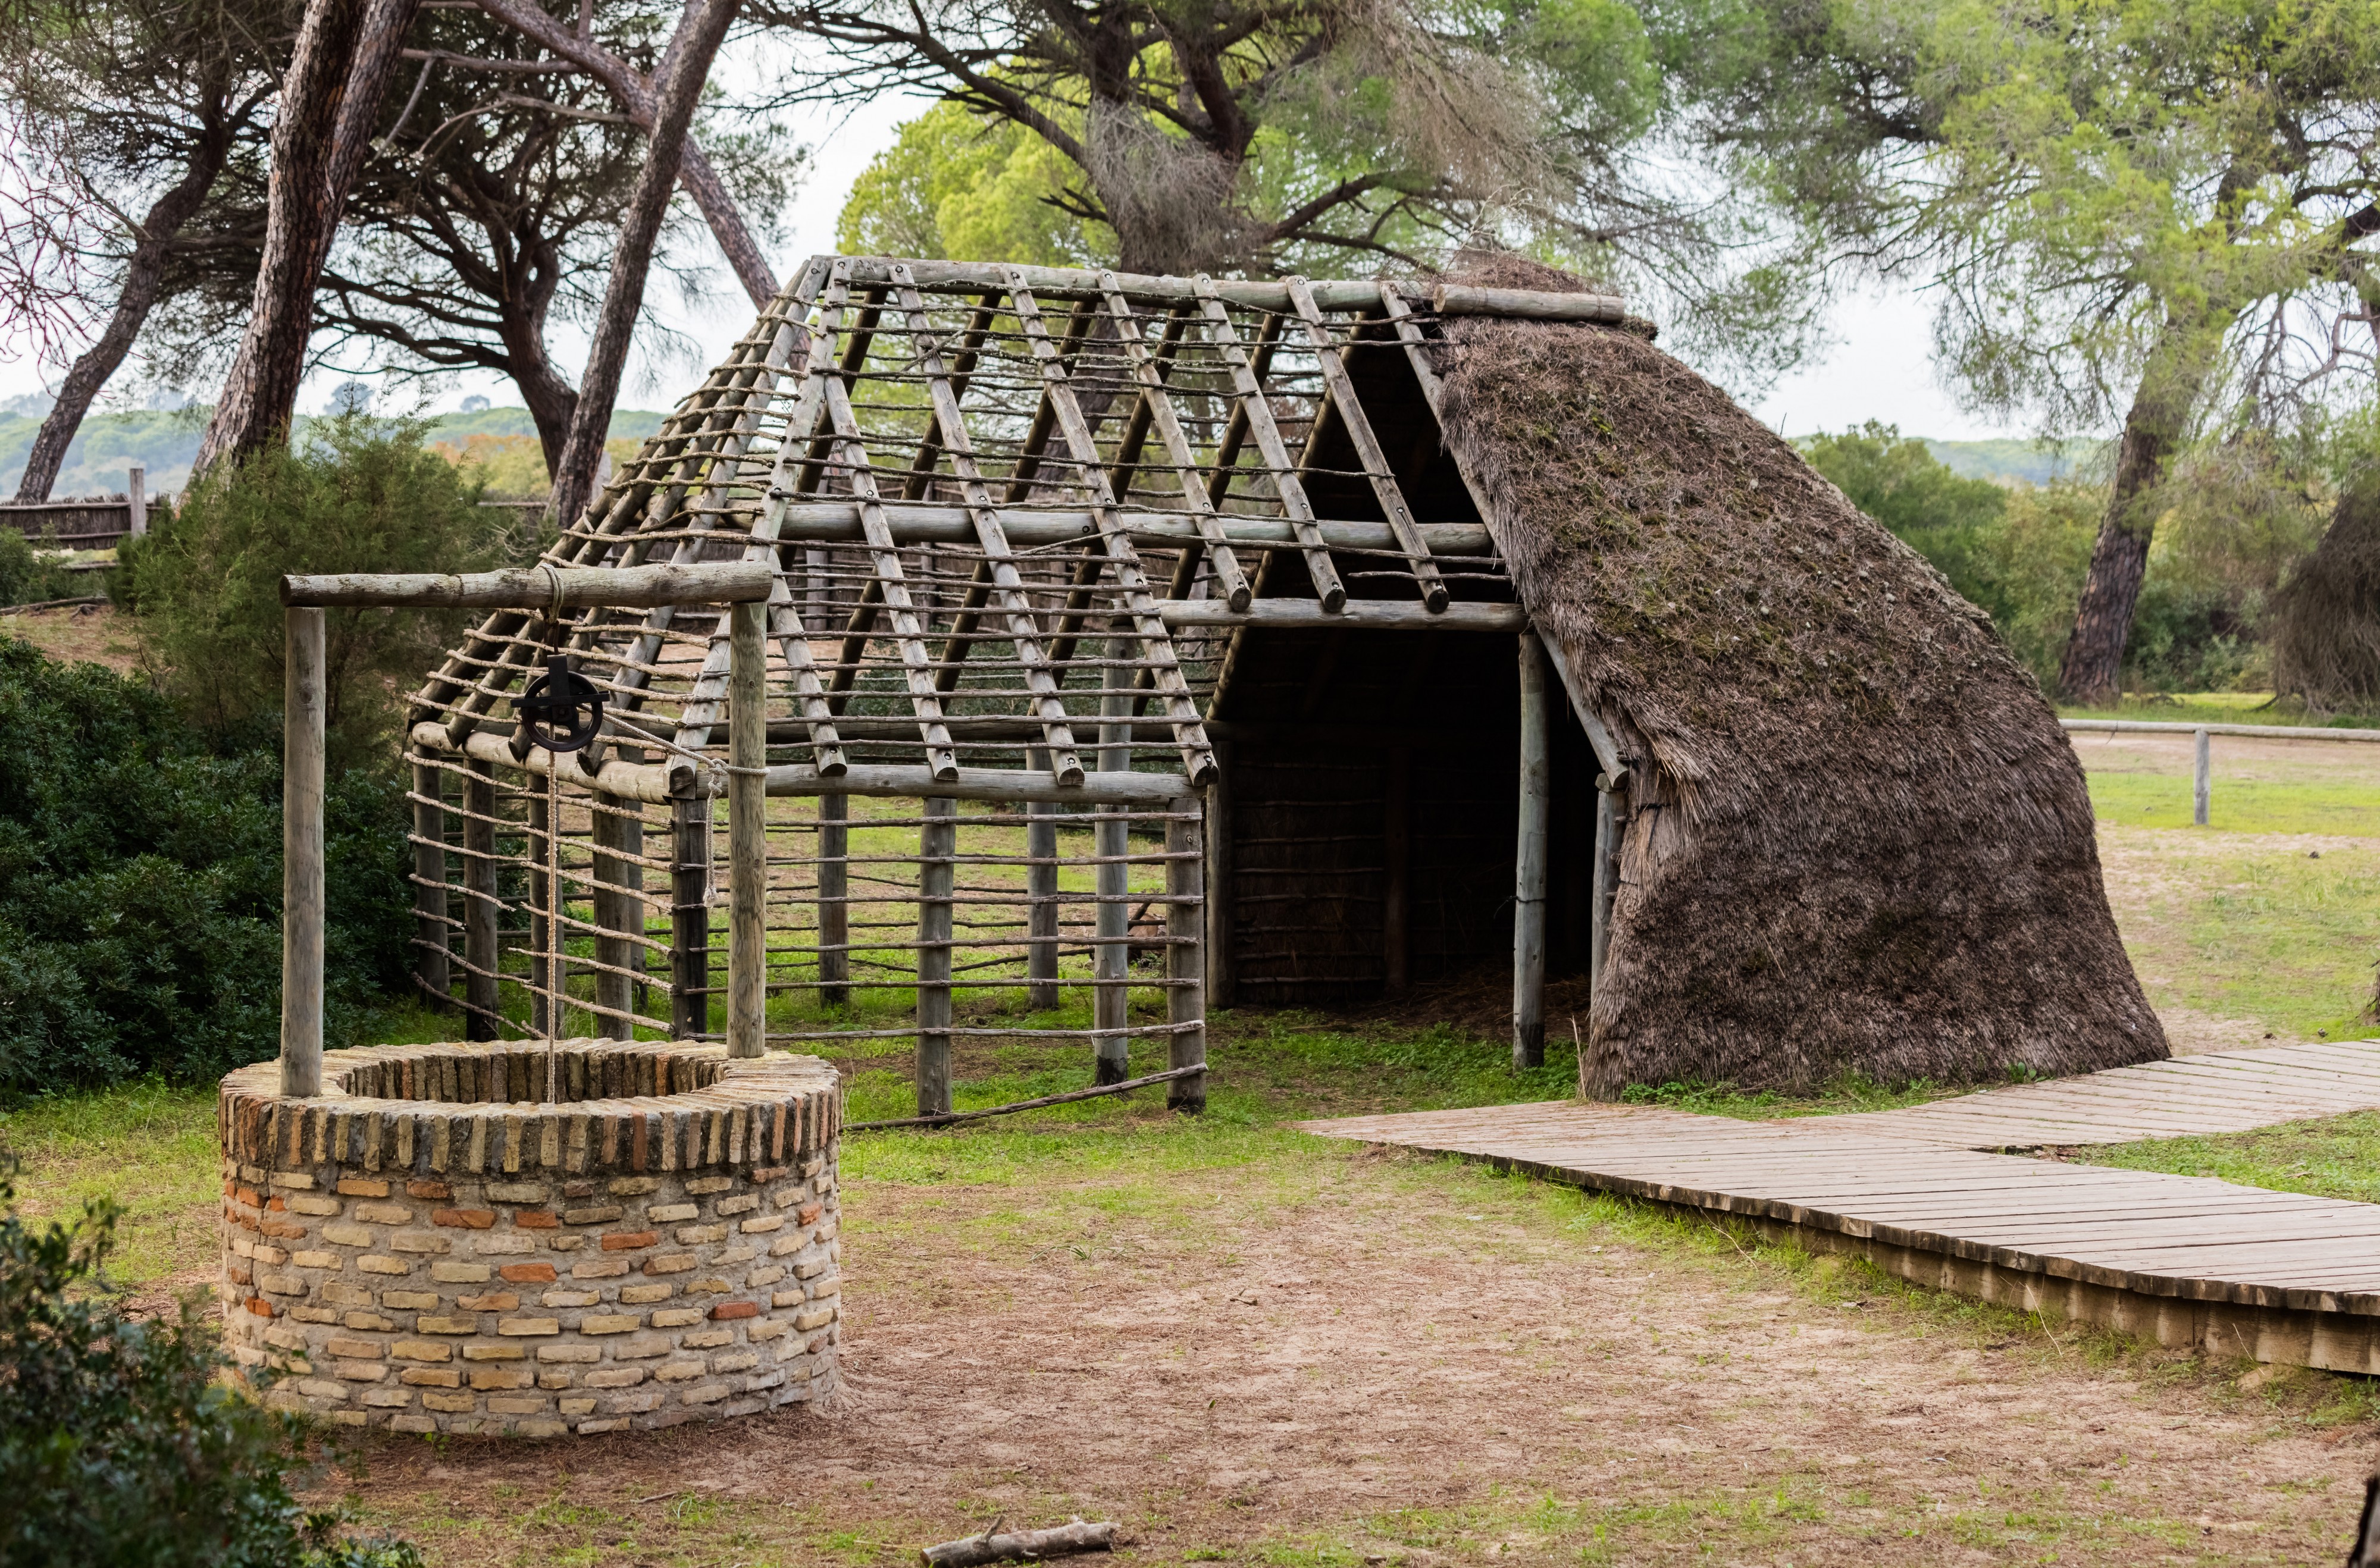 Cabaña del Centro de Interpretación, Parque de Doñana, España, 2015-12-07, DD 15